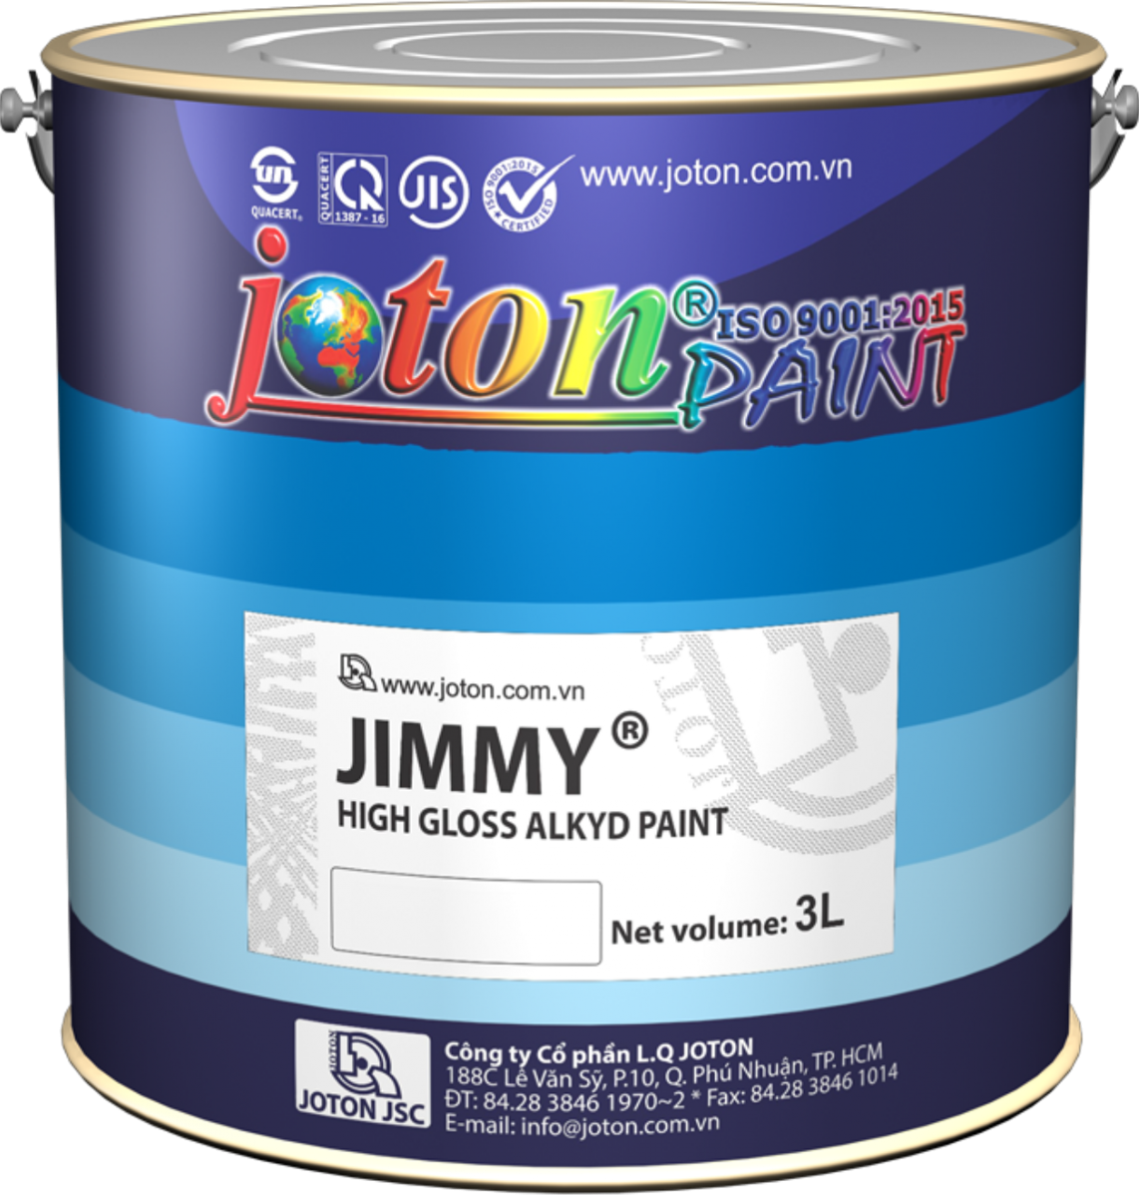 Sản phẩm sơn Jimmy gốc dầu alkyd